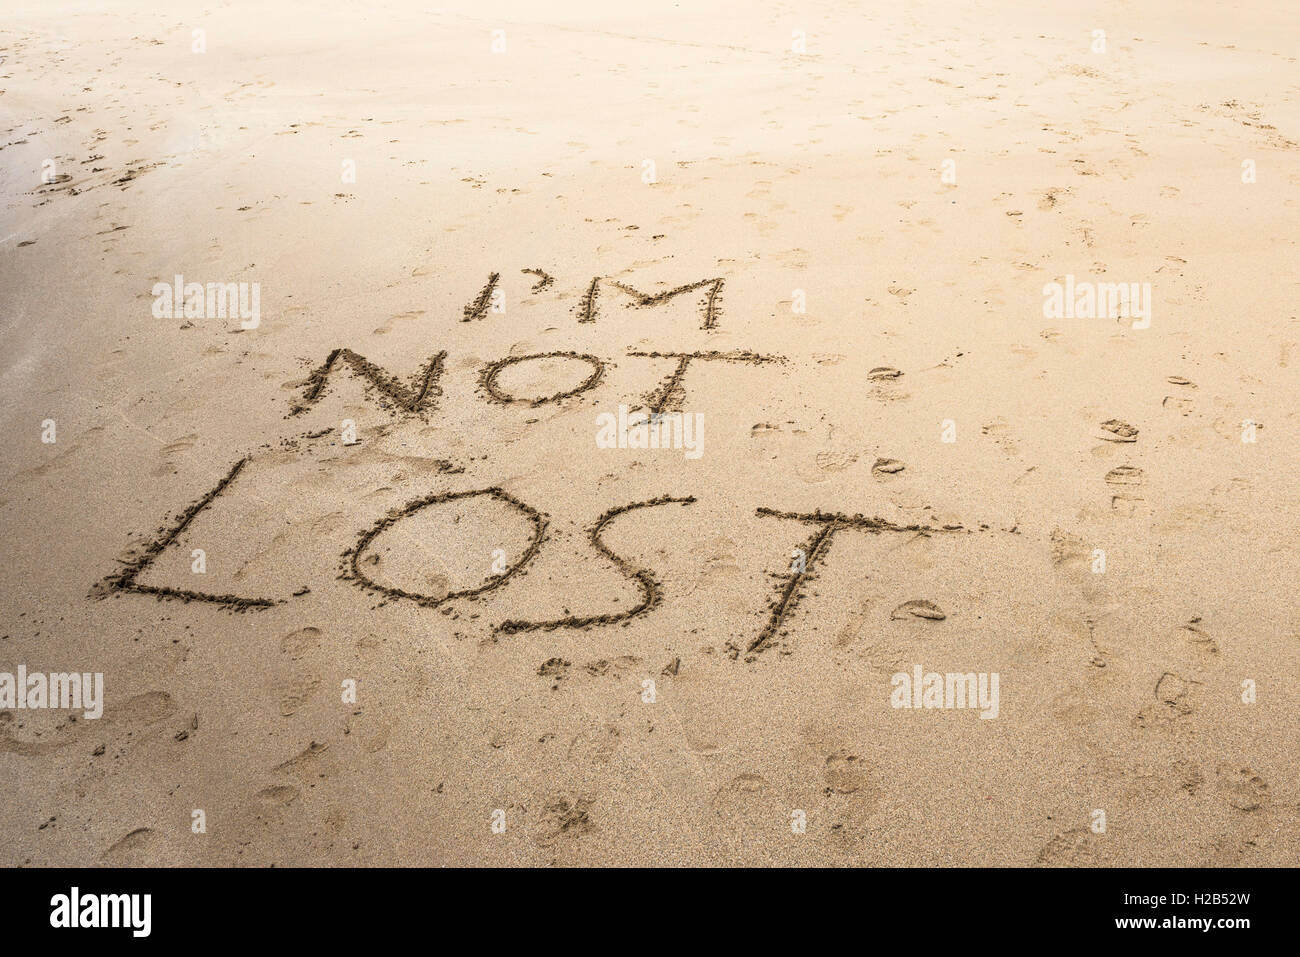 Un mensaje escrito en la arena de una playa, en Cornwall. Foto de stock